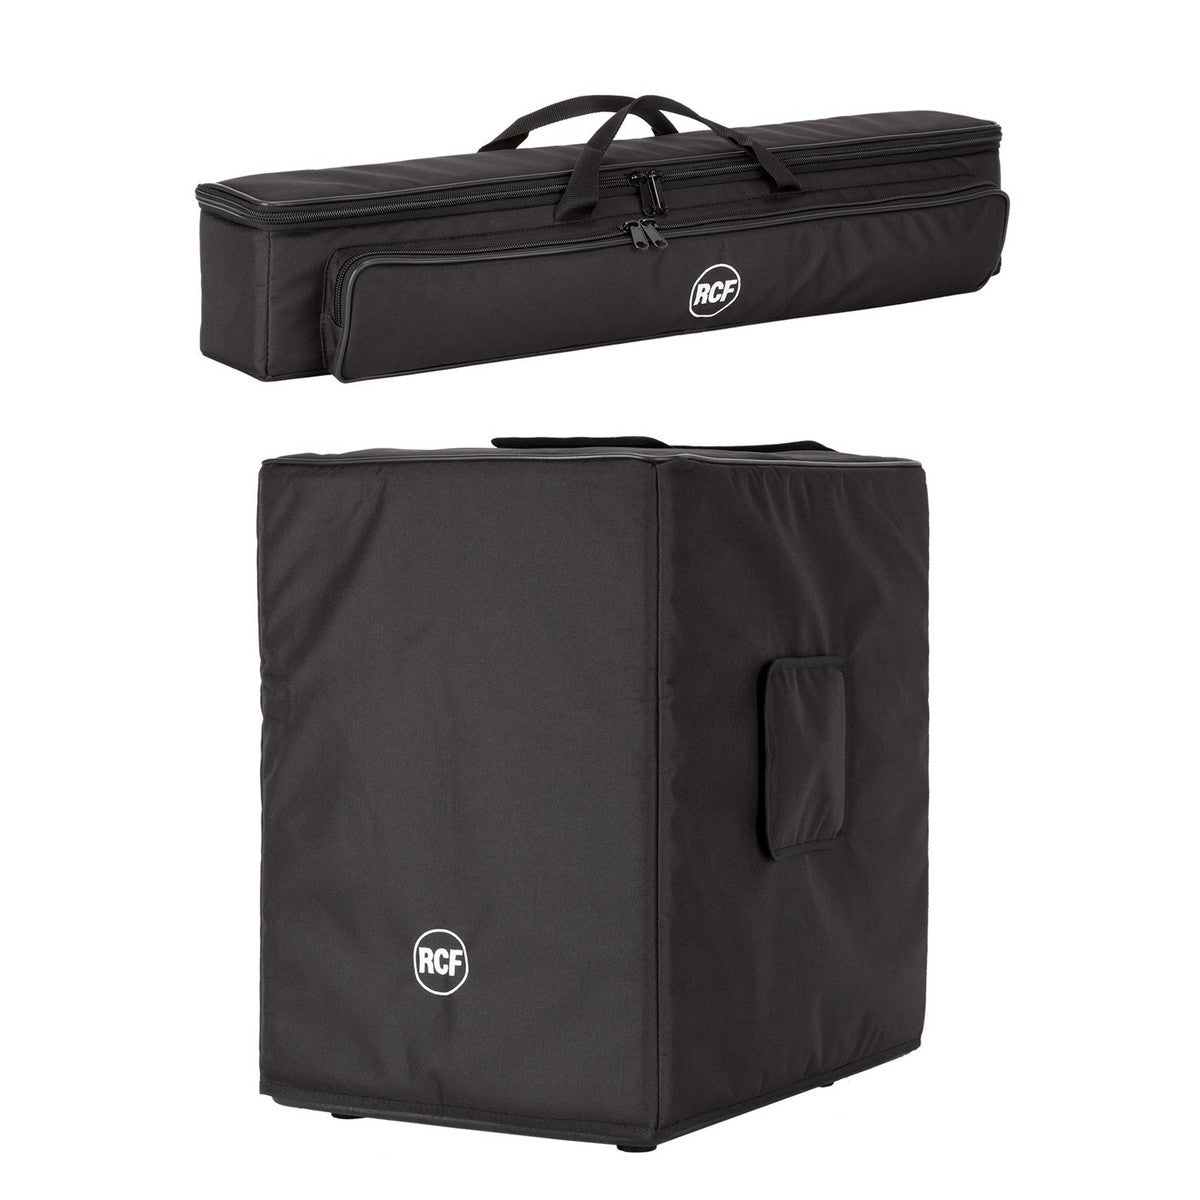 RCF EVOX 12 Protective Cover Bag Set